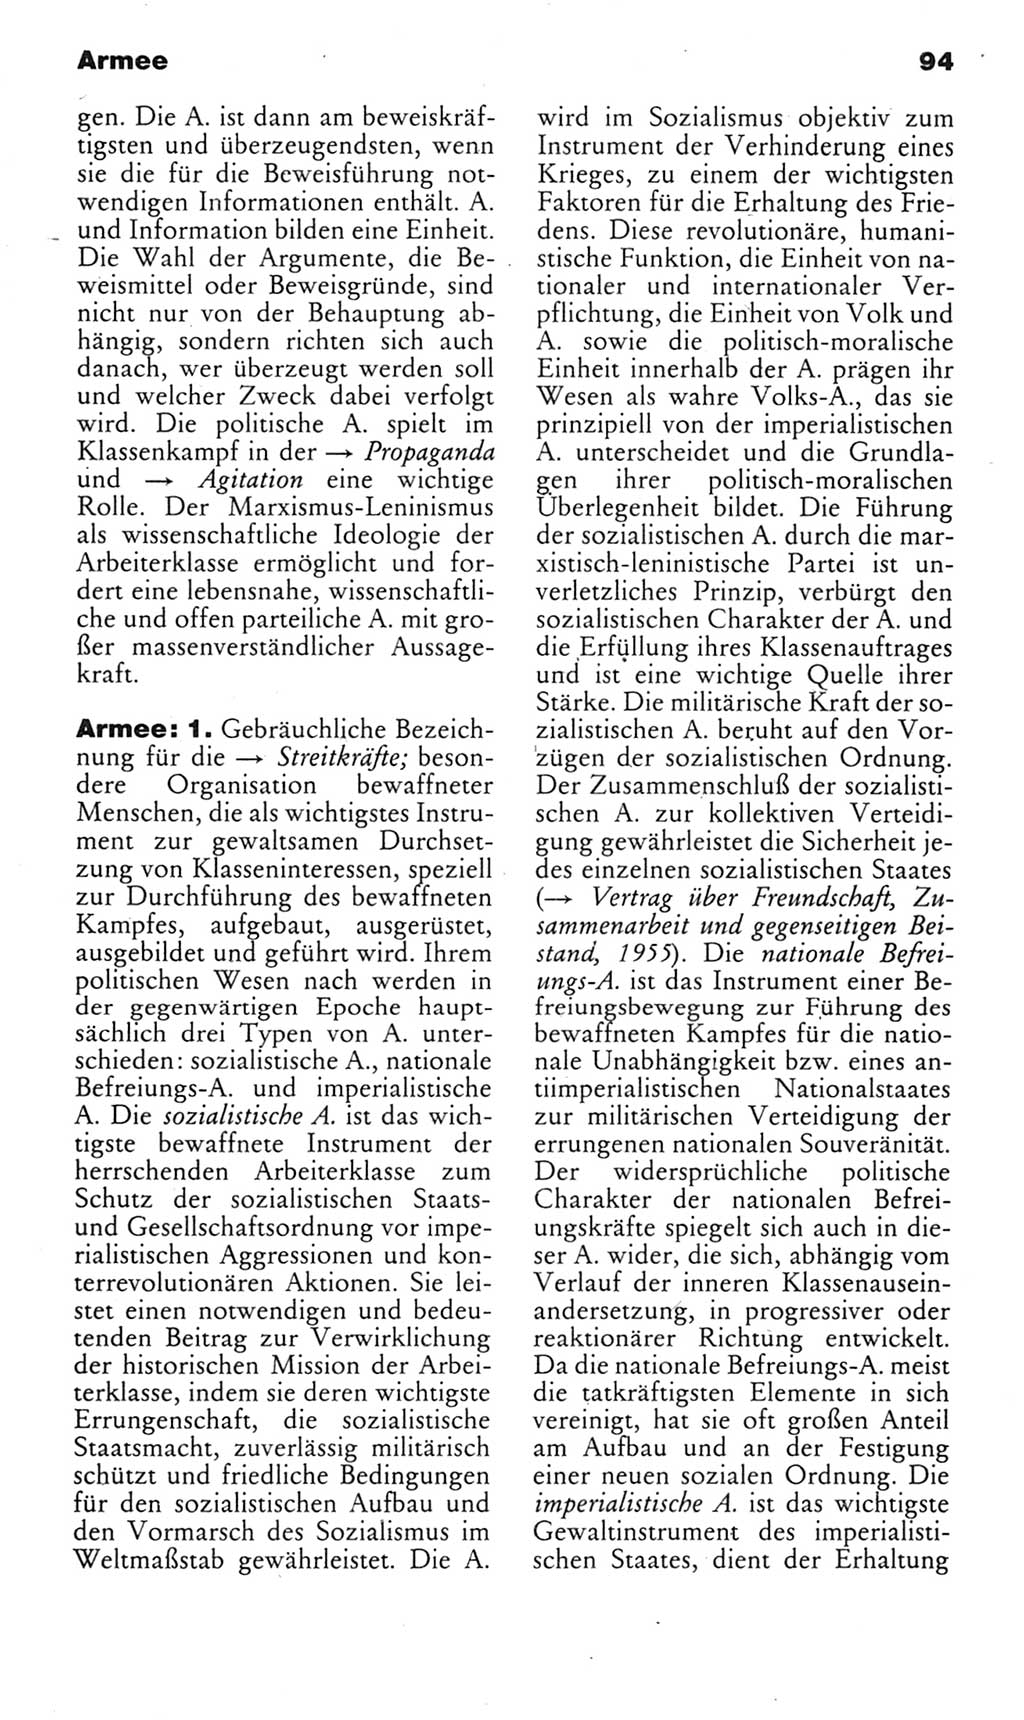 Kleines politisches Wörterbuch [Deutsche Demokratische Republik (DDR)] 1983, Seite 94 (Kl. pol. Wb. DDR 1983, S. 94)